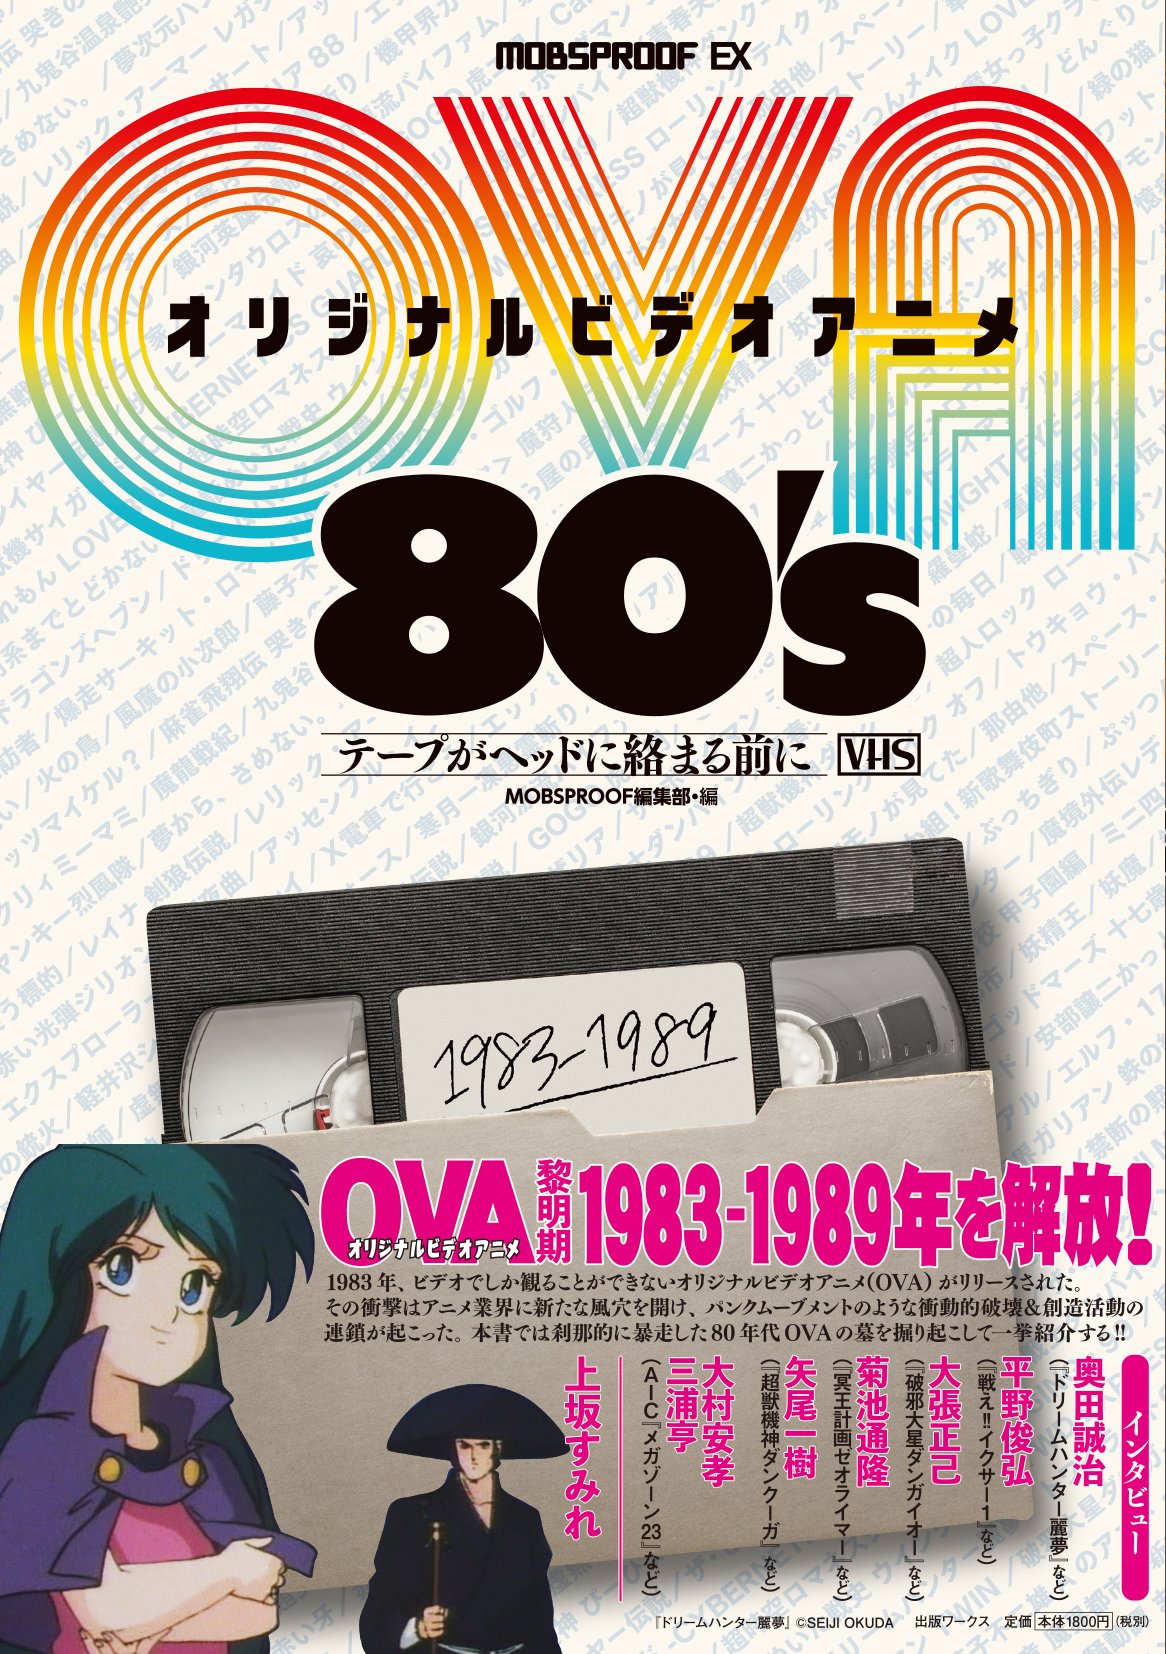 あなたはどれだけ知ってる 80年代に花開いた Ova オリジナルアニメビデオ の世界 ダ ヴィンチニュース